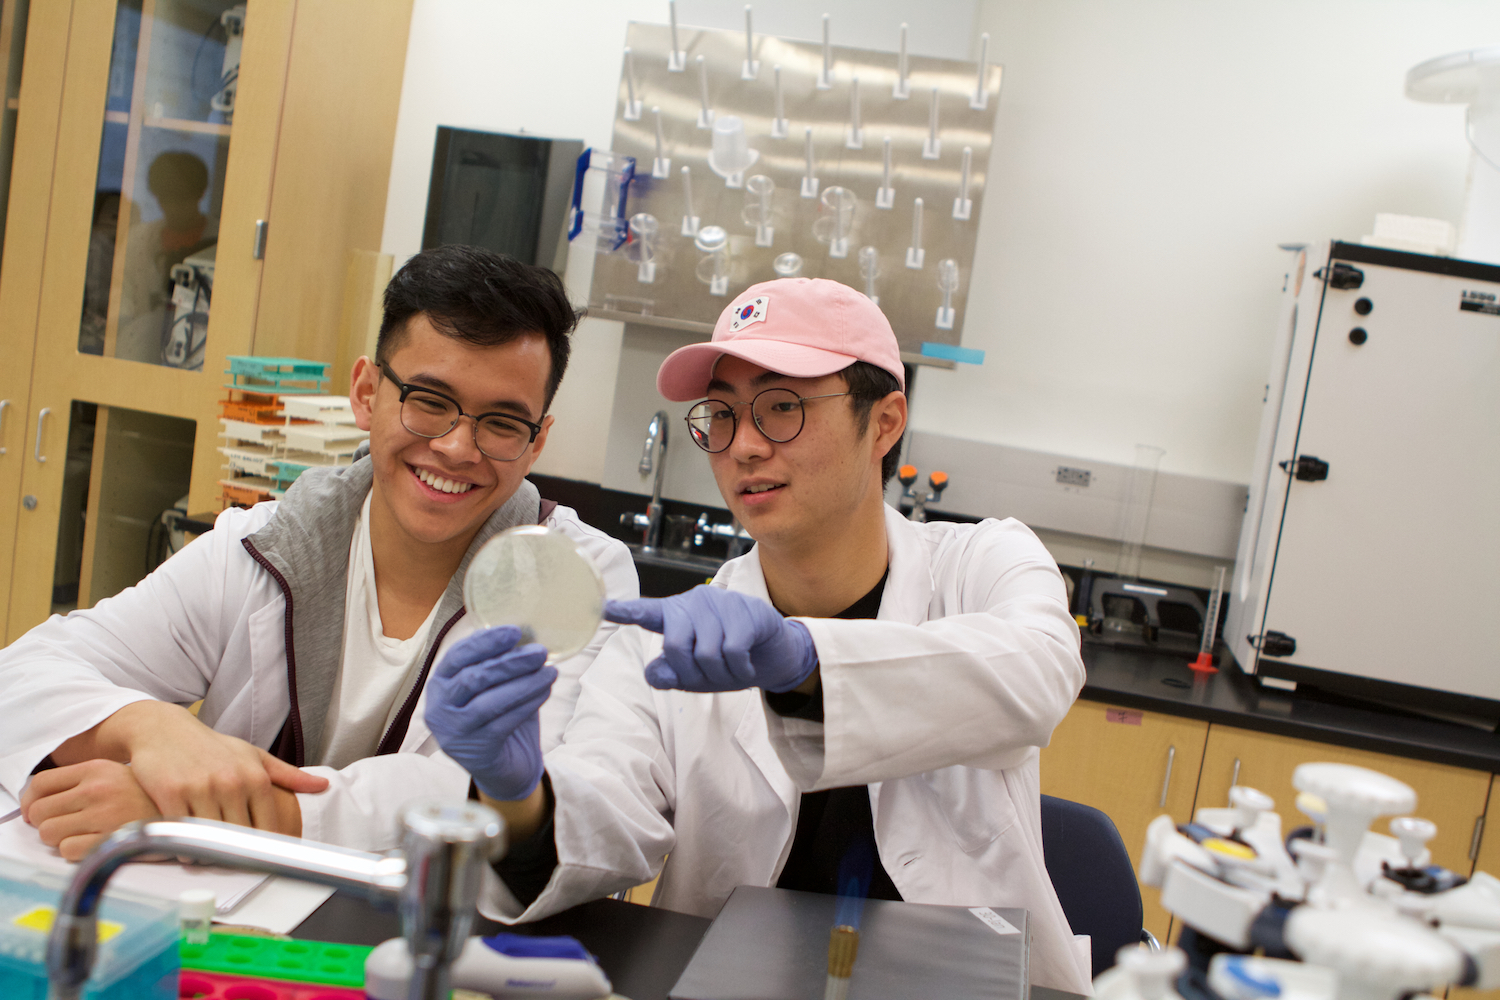 Thumbnail for La Sierra freshmen discover new viruses through national research program